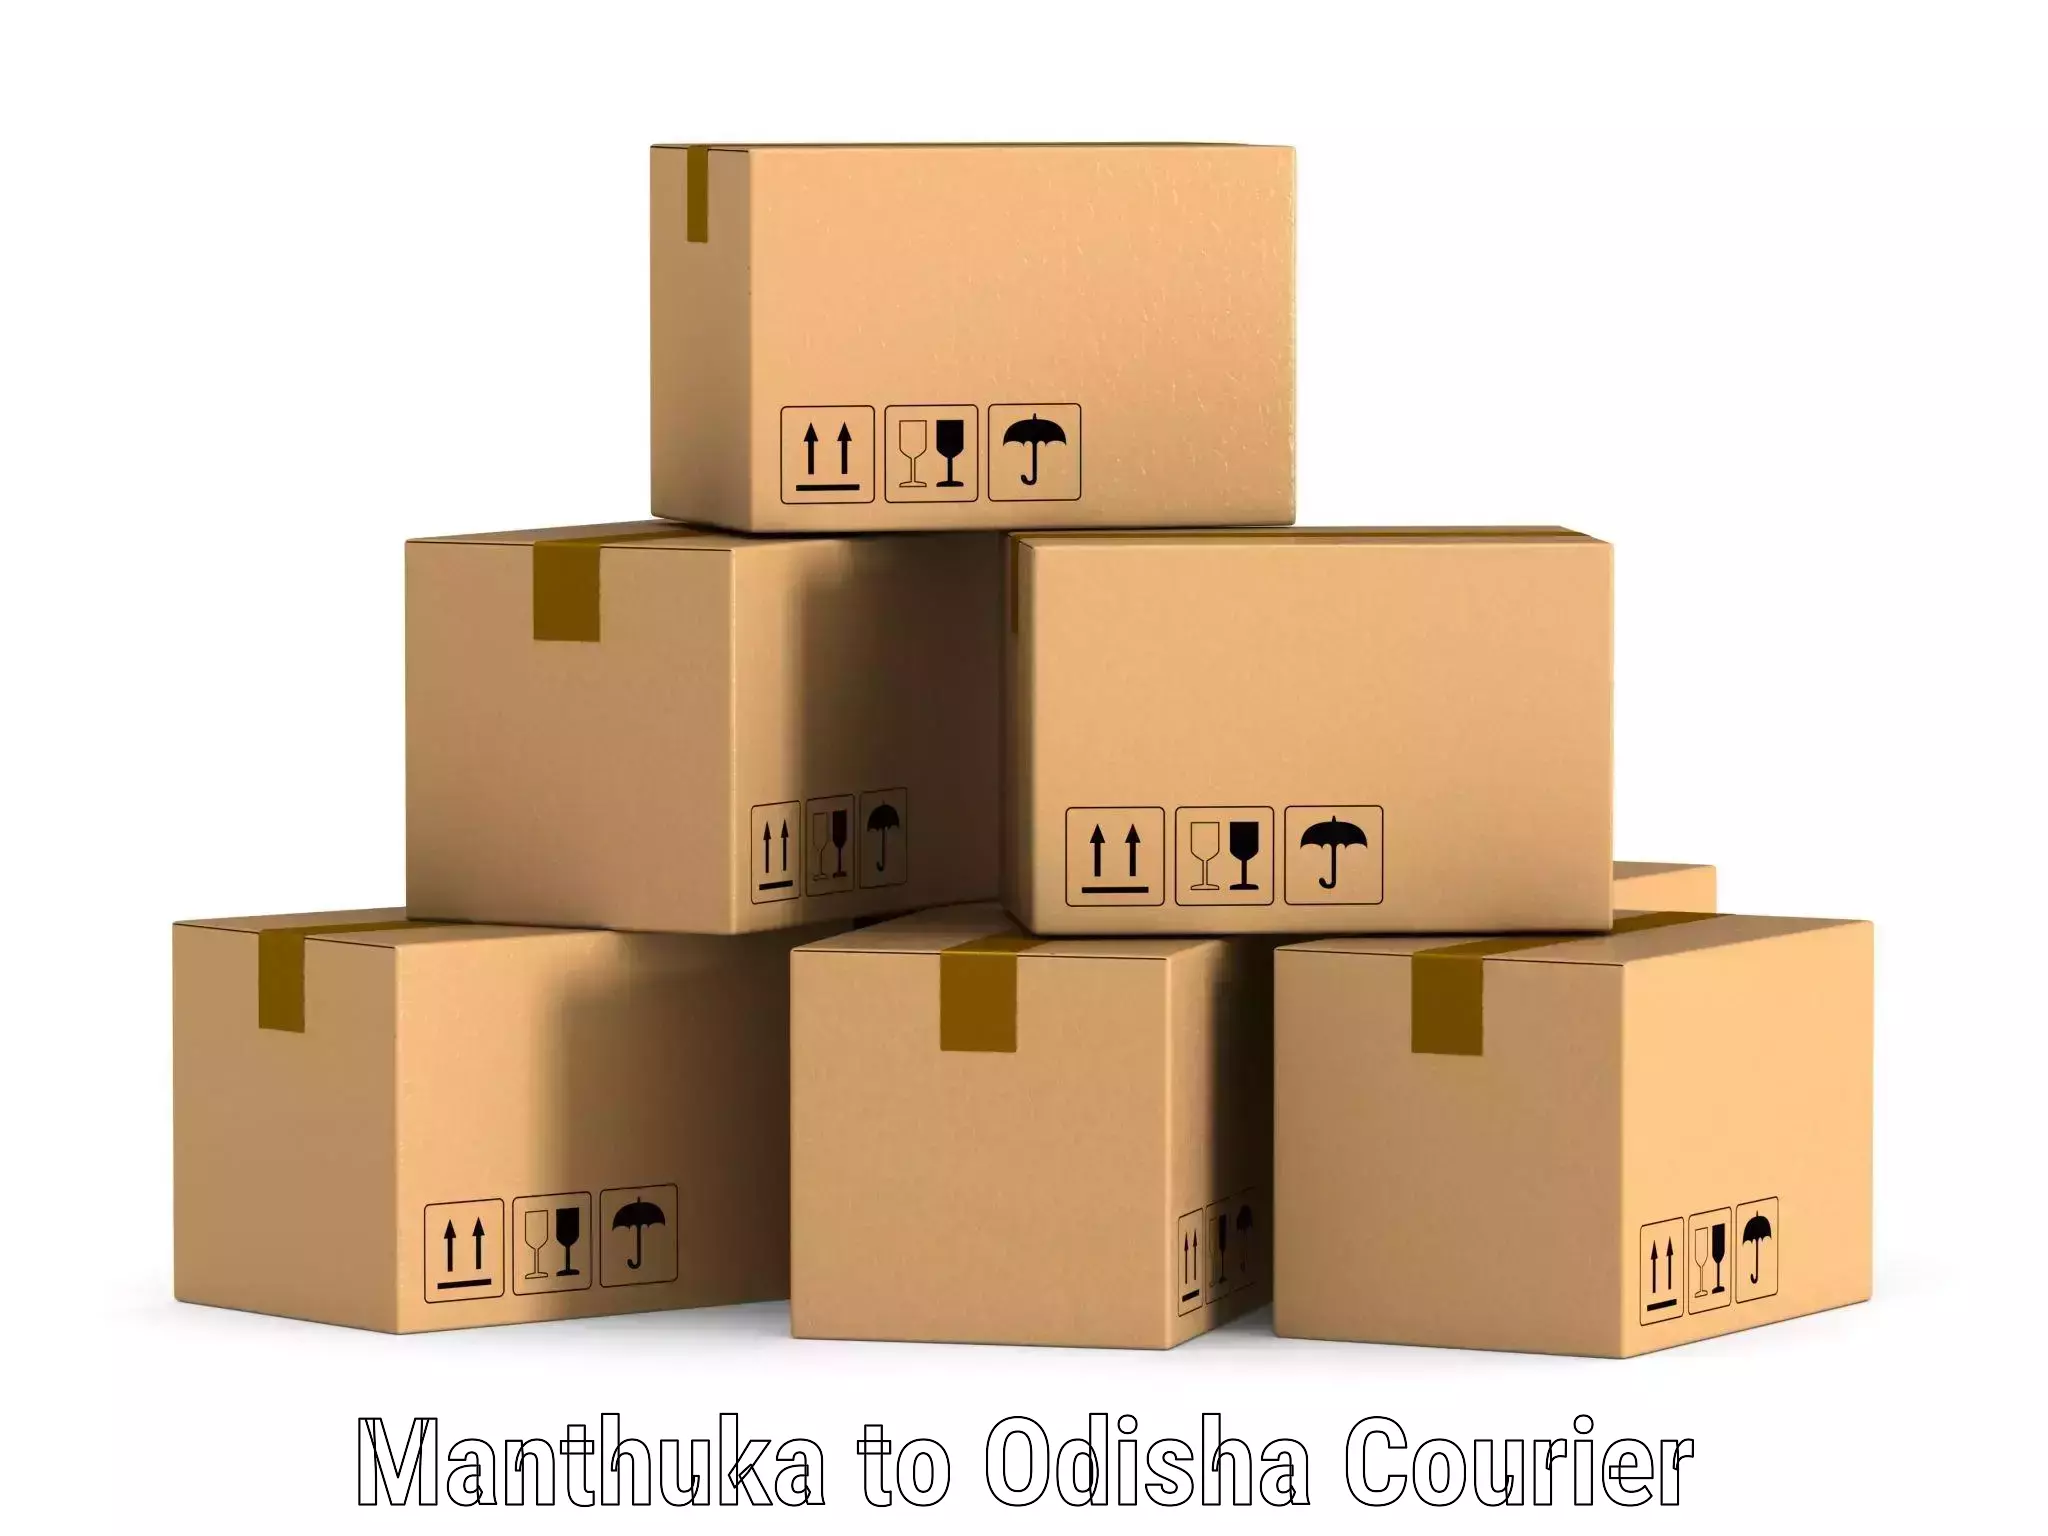 User-friendly courier app Manthuka to Telkoi